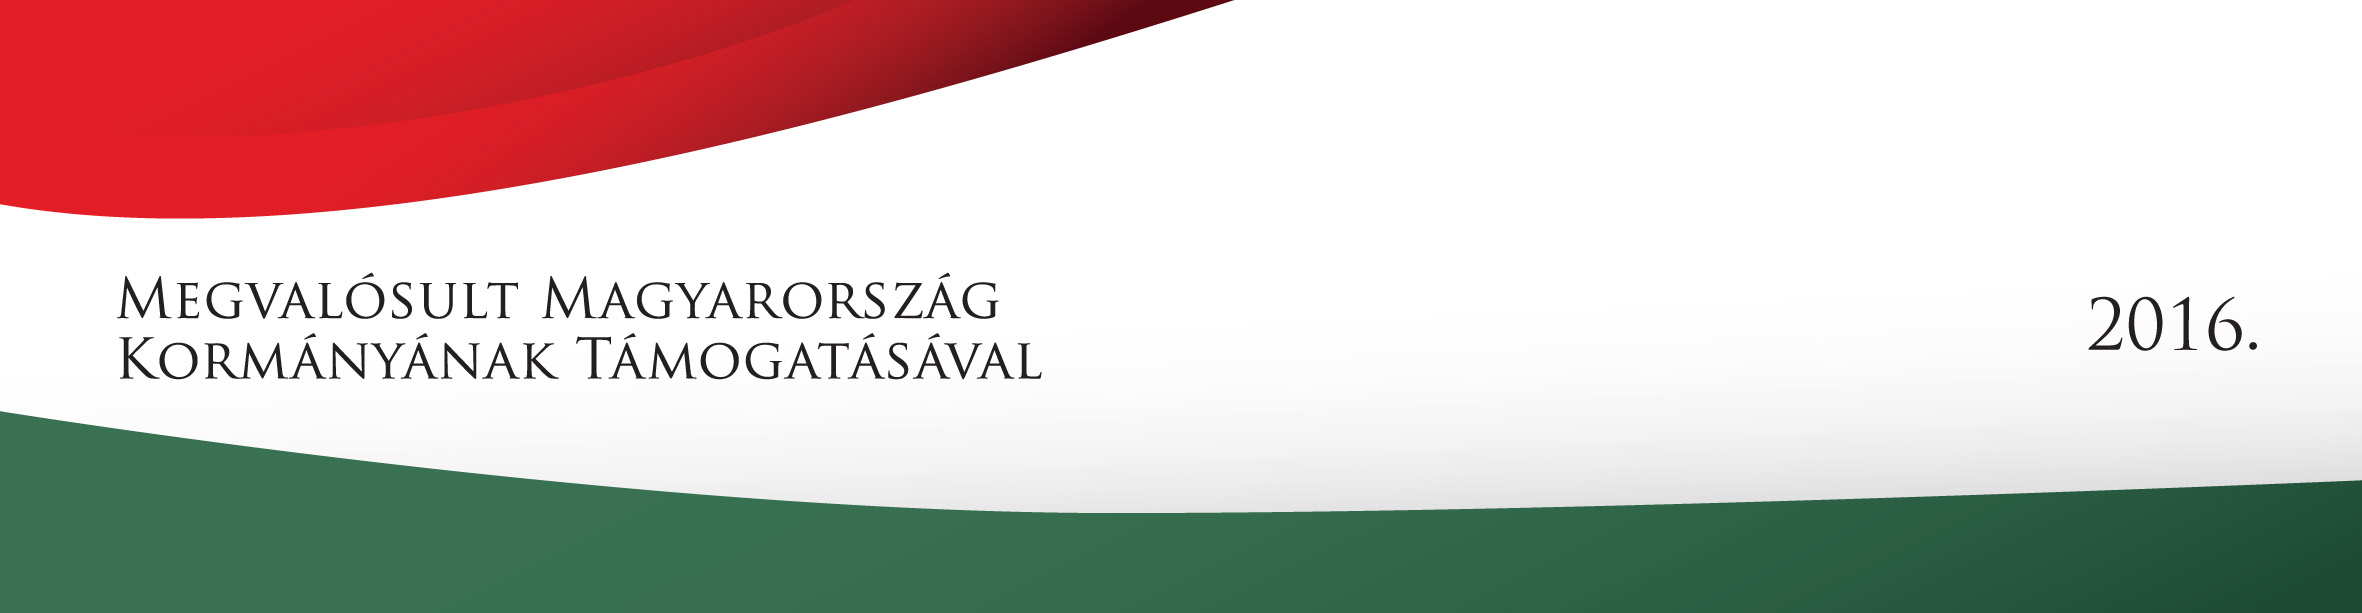 Megvalósult Magyarország Kormányának Támogatásával 2016 logó